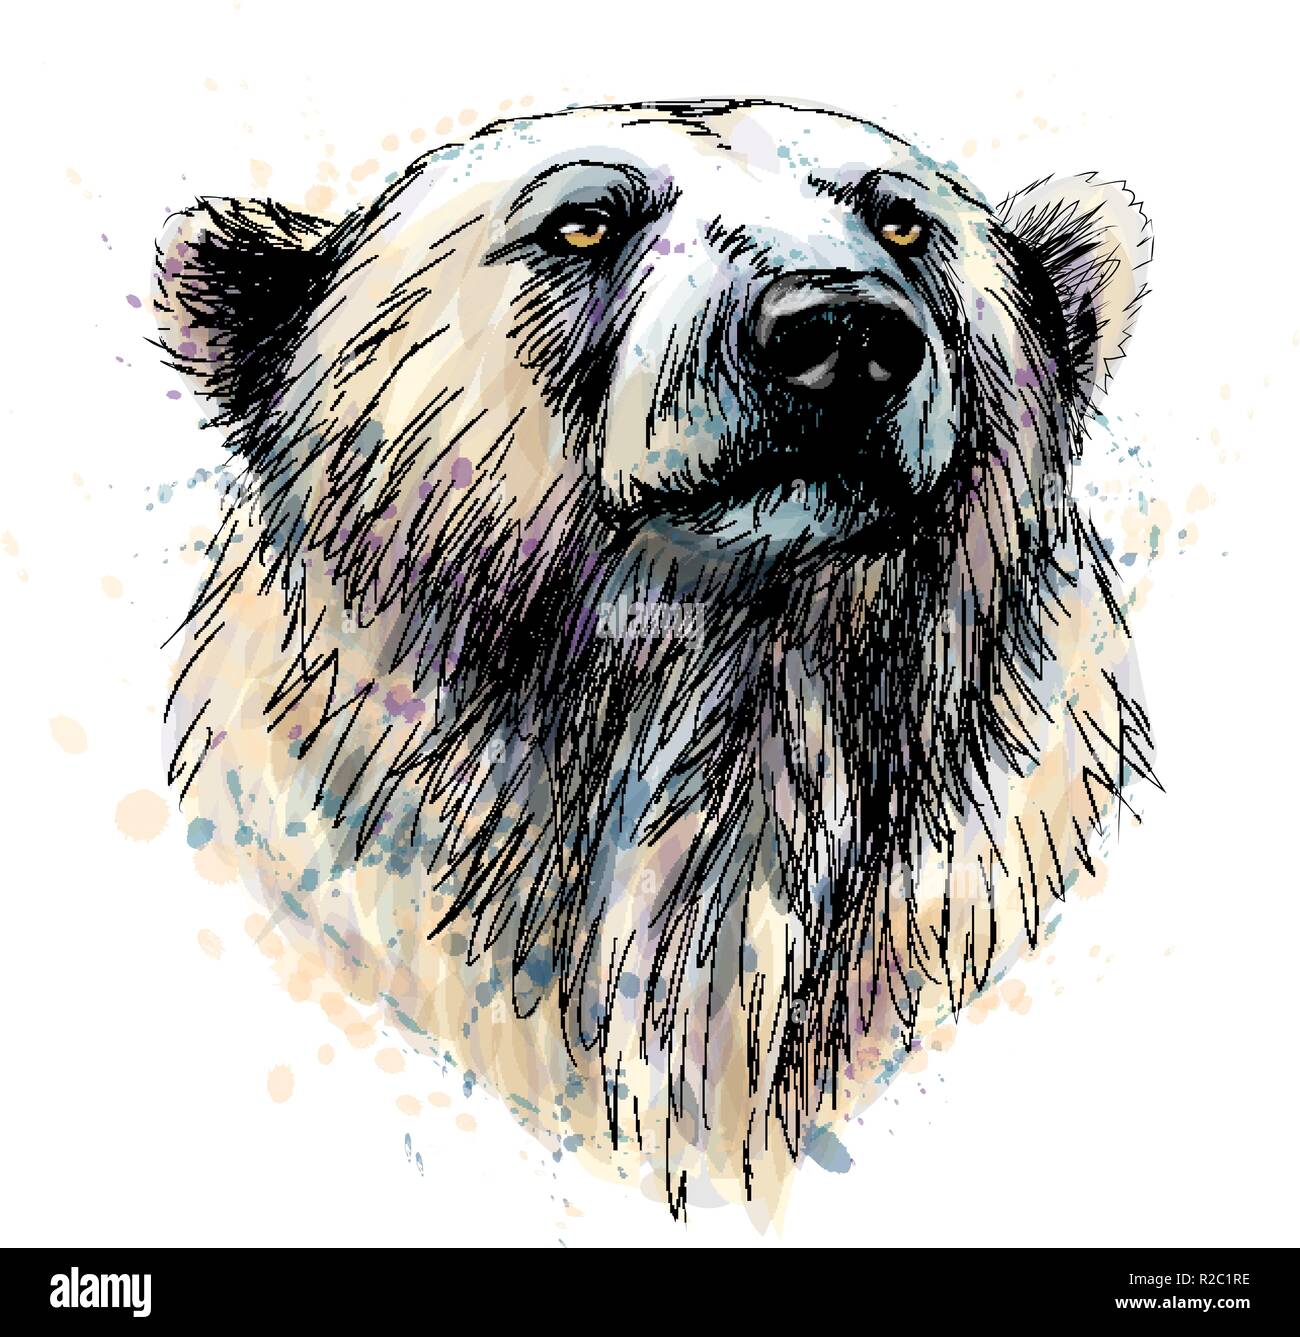 Porträt eines Eisbären Kopf aus einem Splash von Aquarell, hand Skizze gezeichnet Stock Vektor